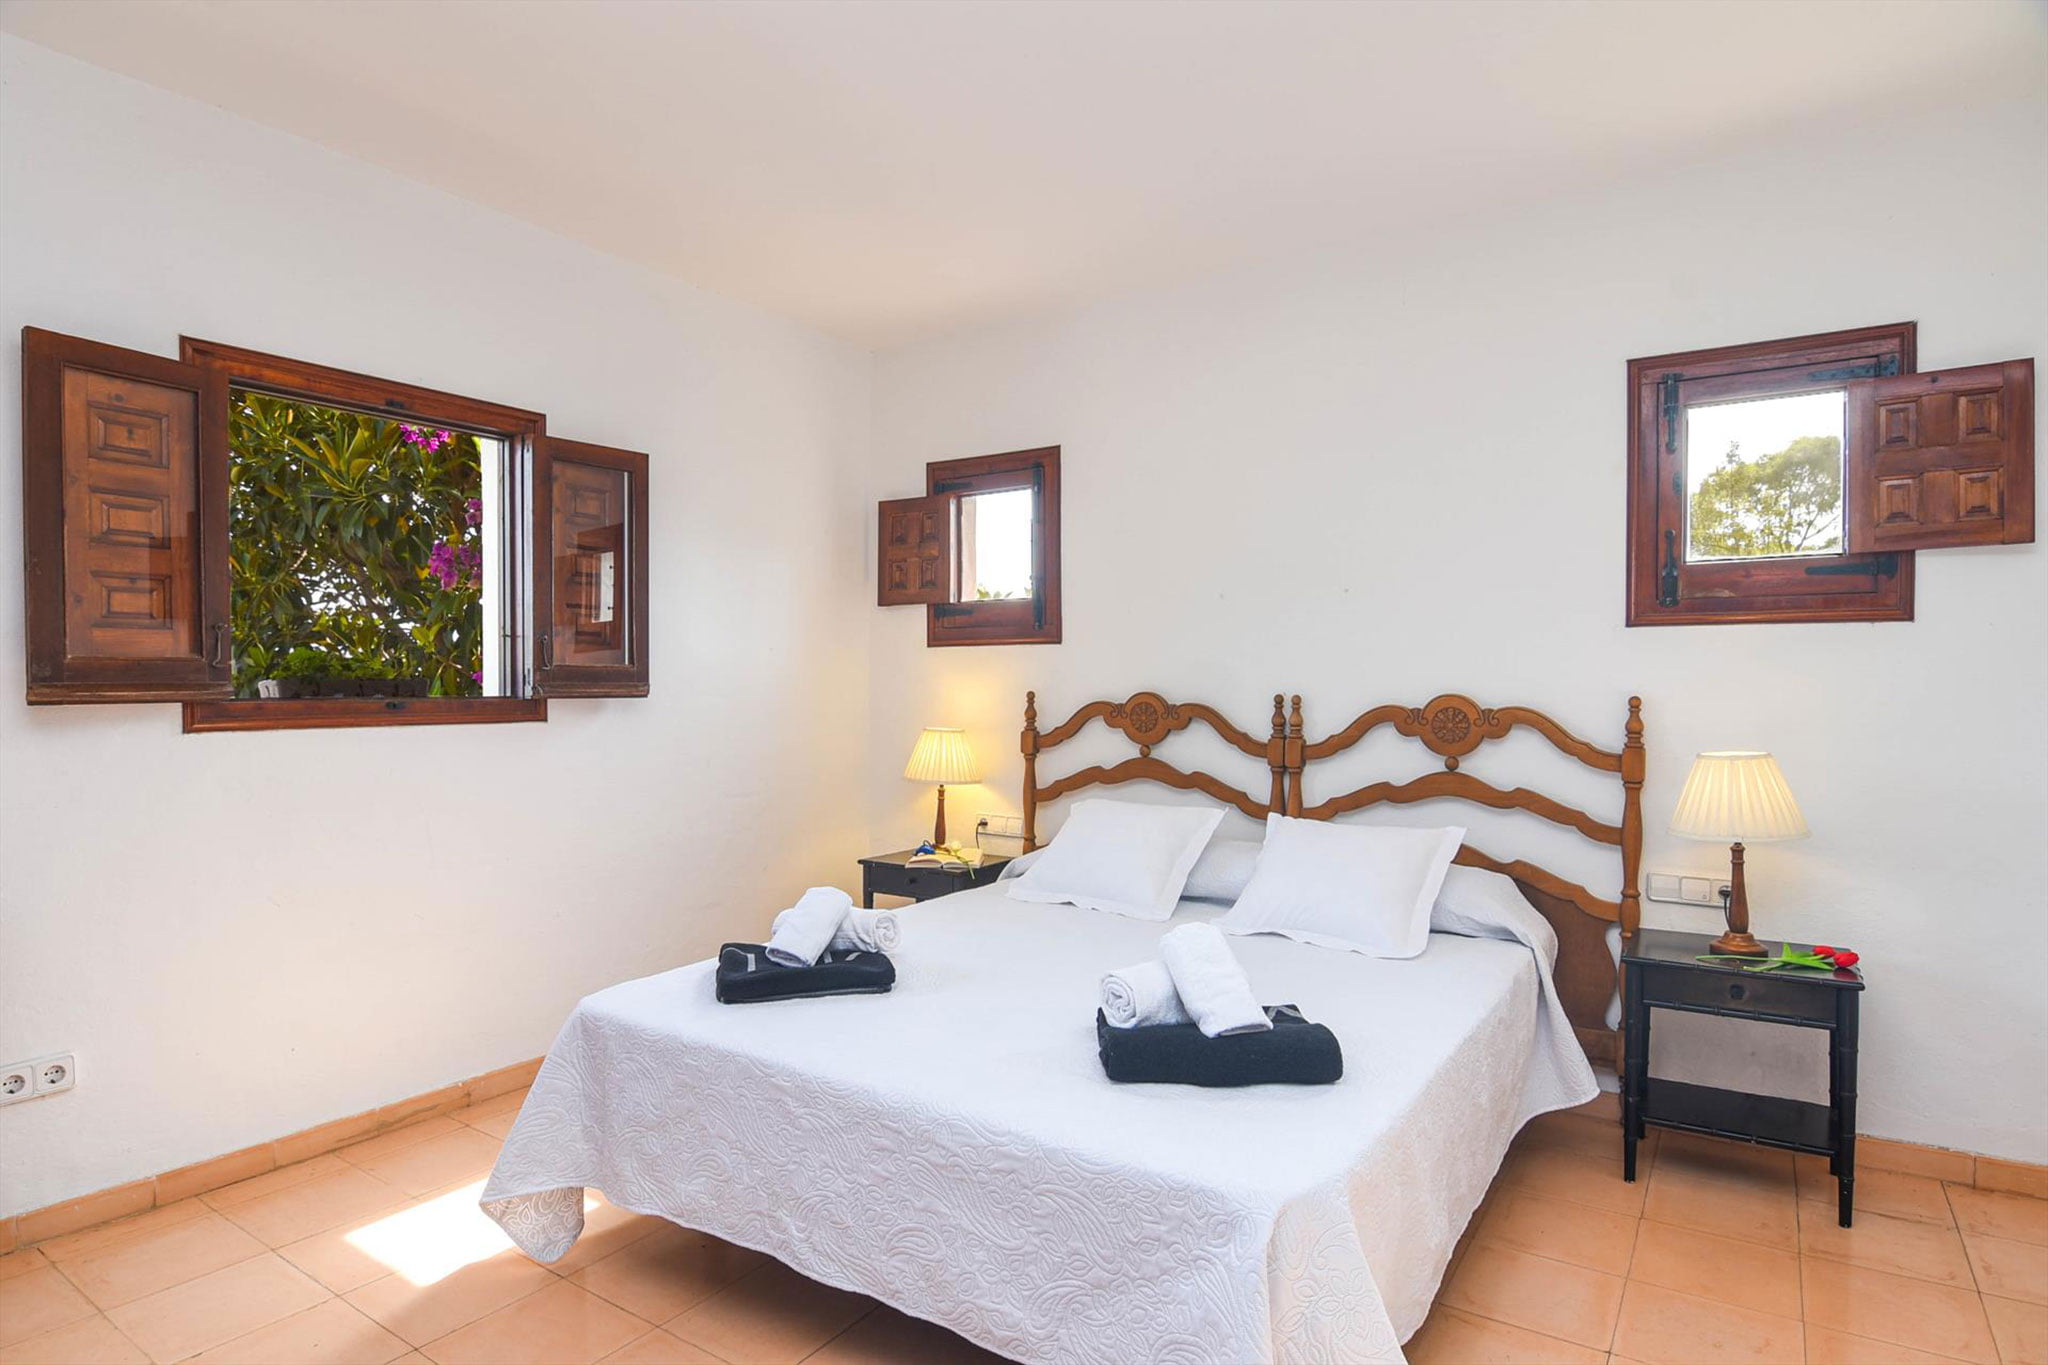 Dormitorio en una casa de vacaciones con capacidad para 18 personas en Jávea – Aguila Rent a Villa